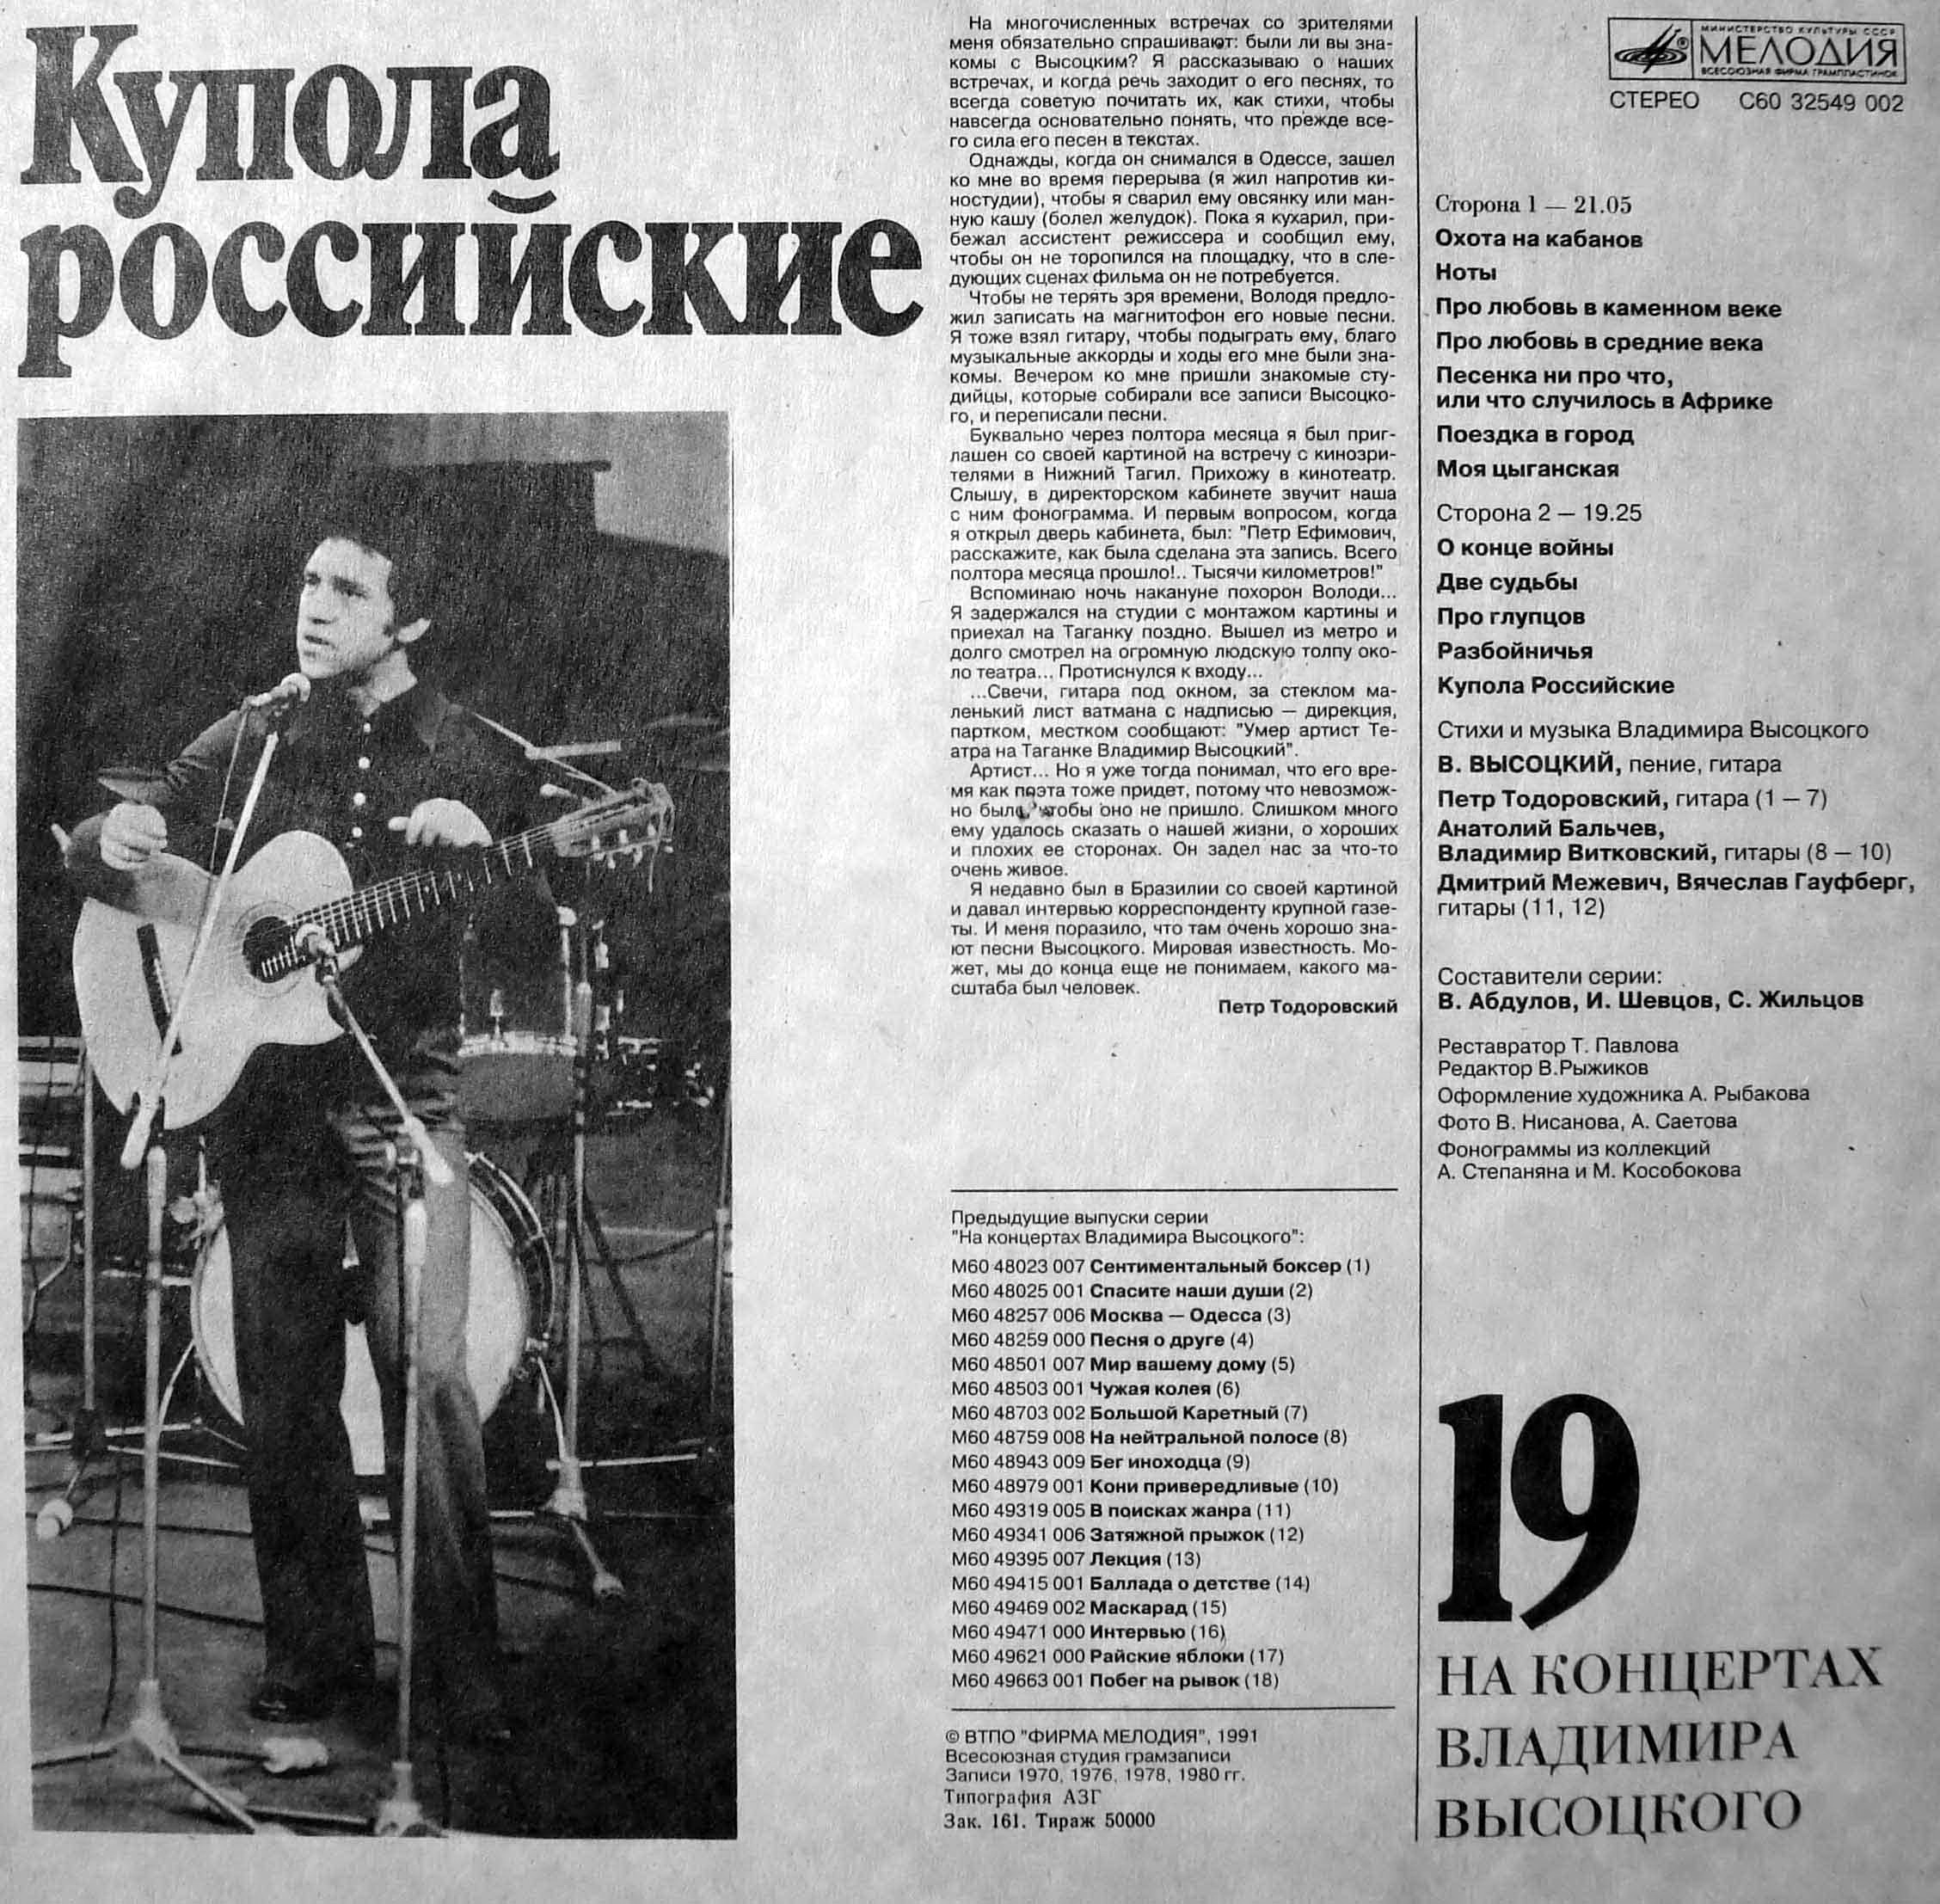 На концертах Владимира Высоцкого (19) - Купола российские